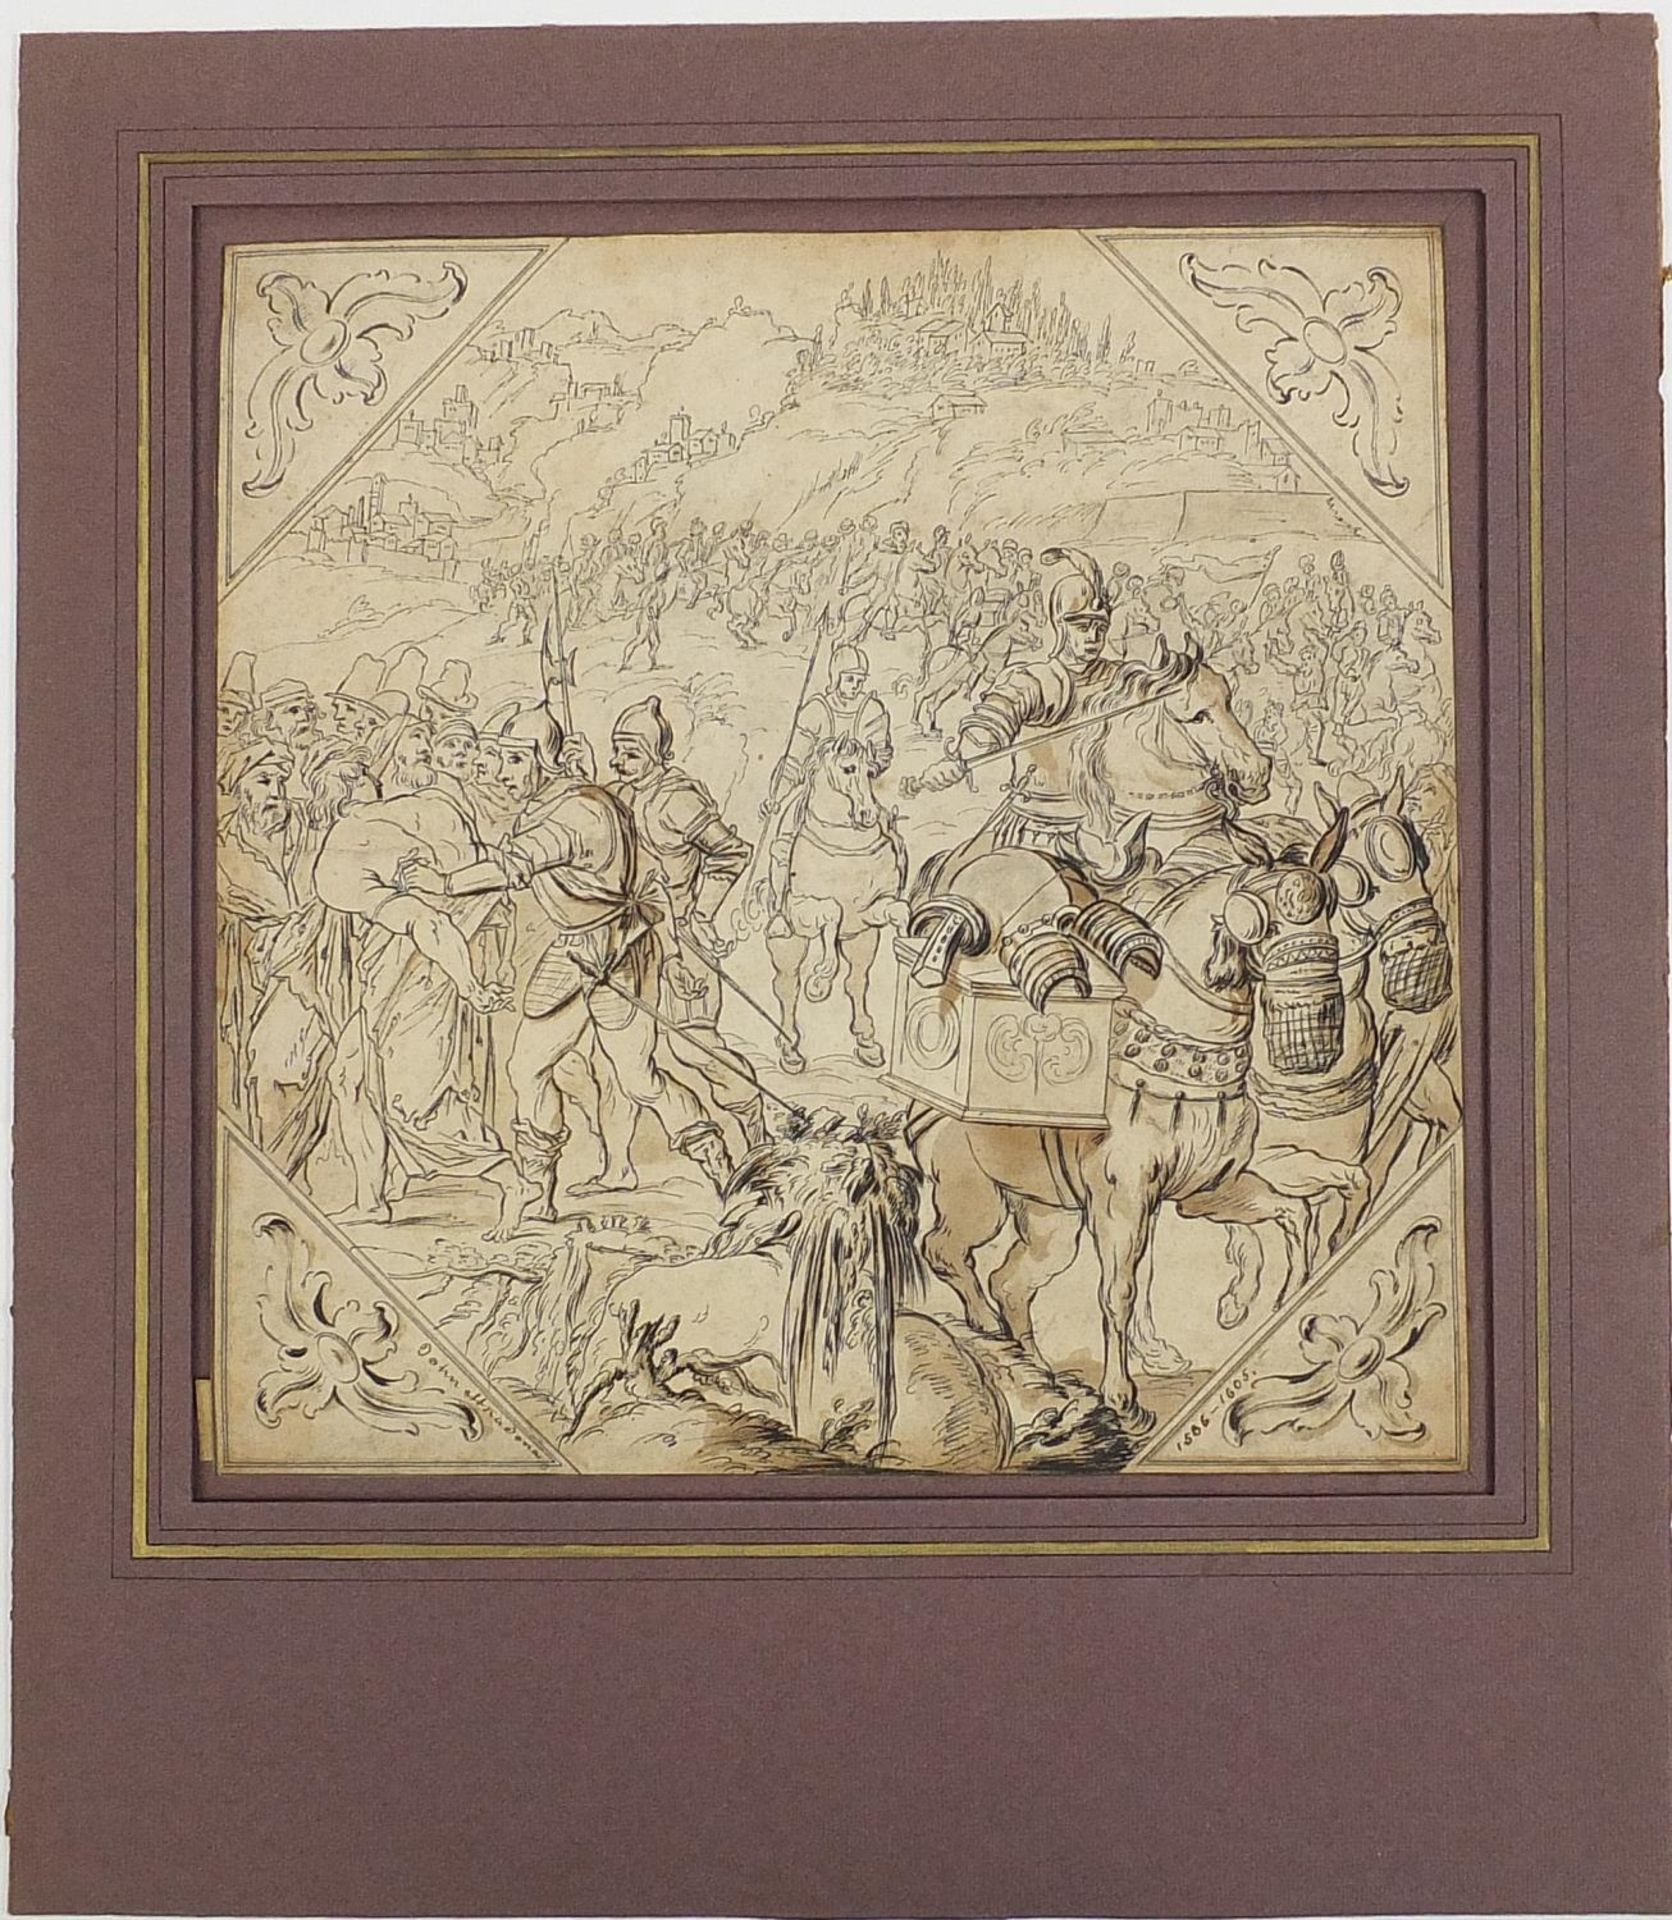 Manner of Jan van der Straet - Battle scene with figures on horseback wearing armour, antique - Image 4 of 6